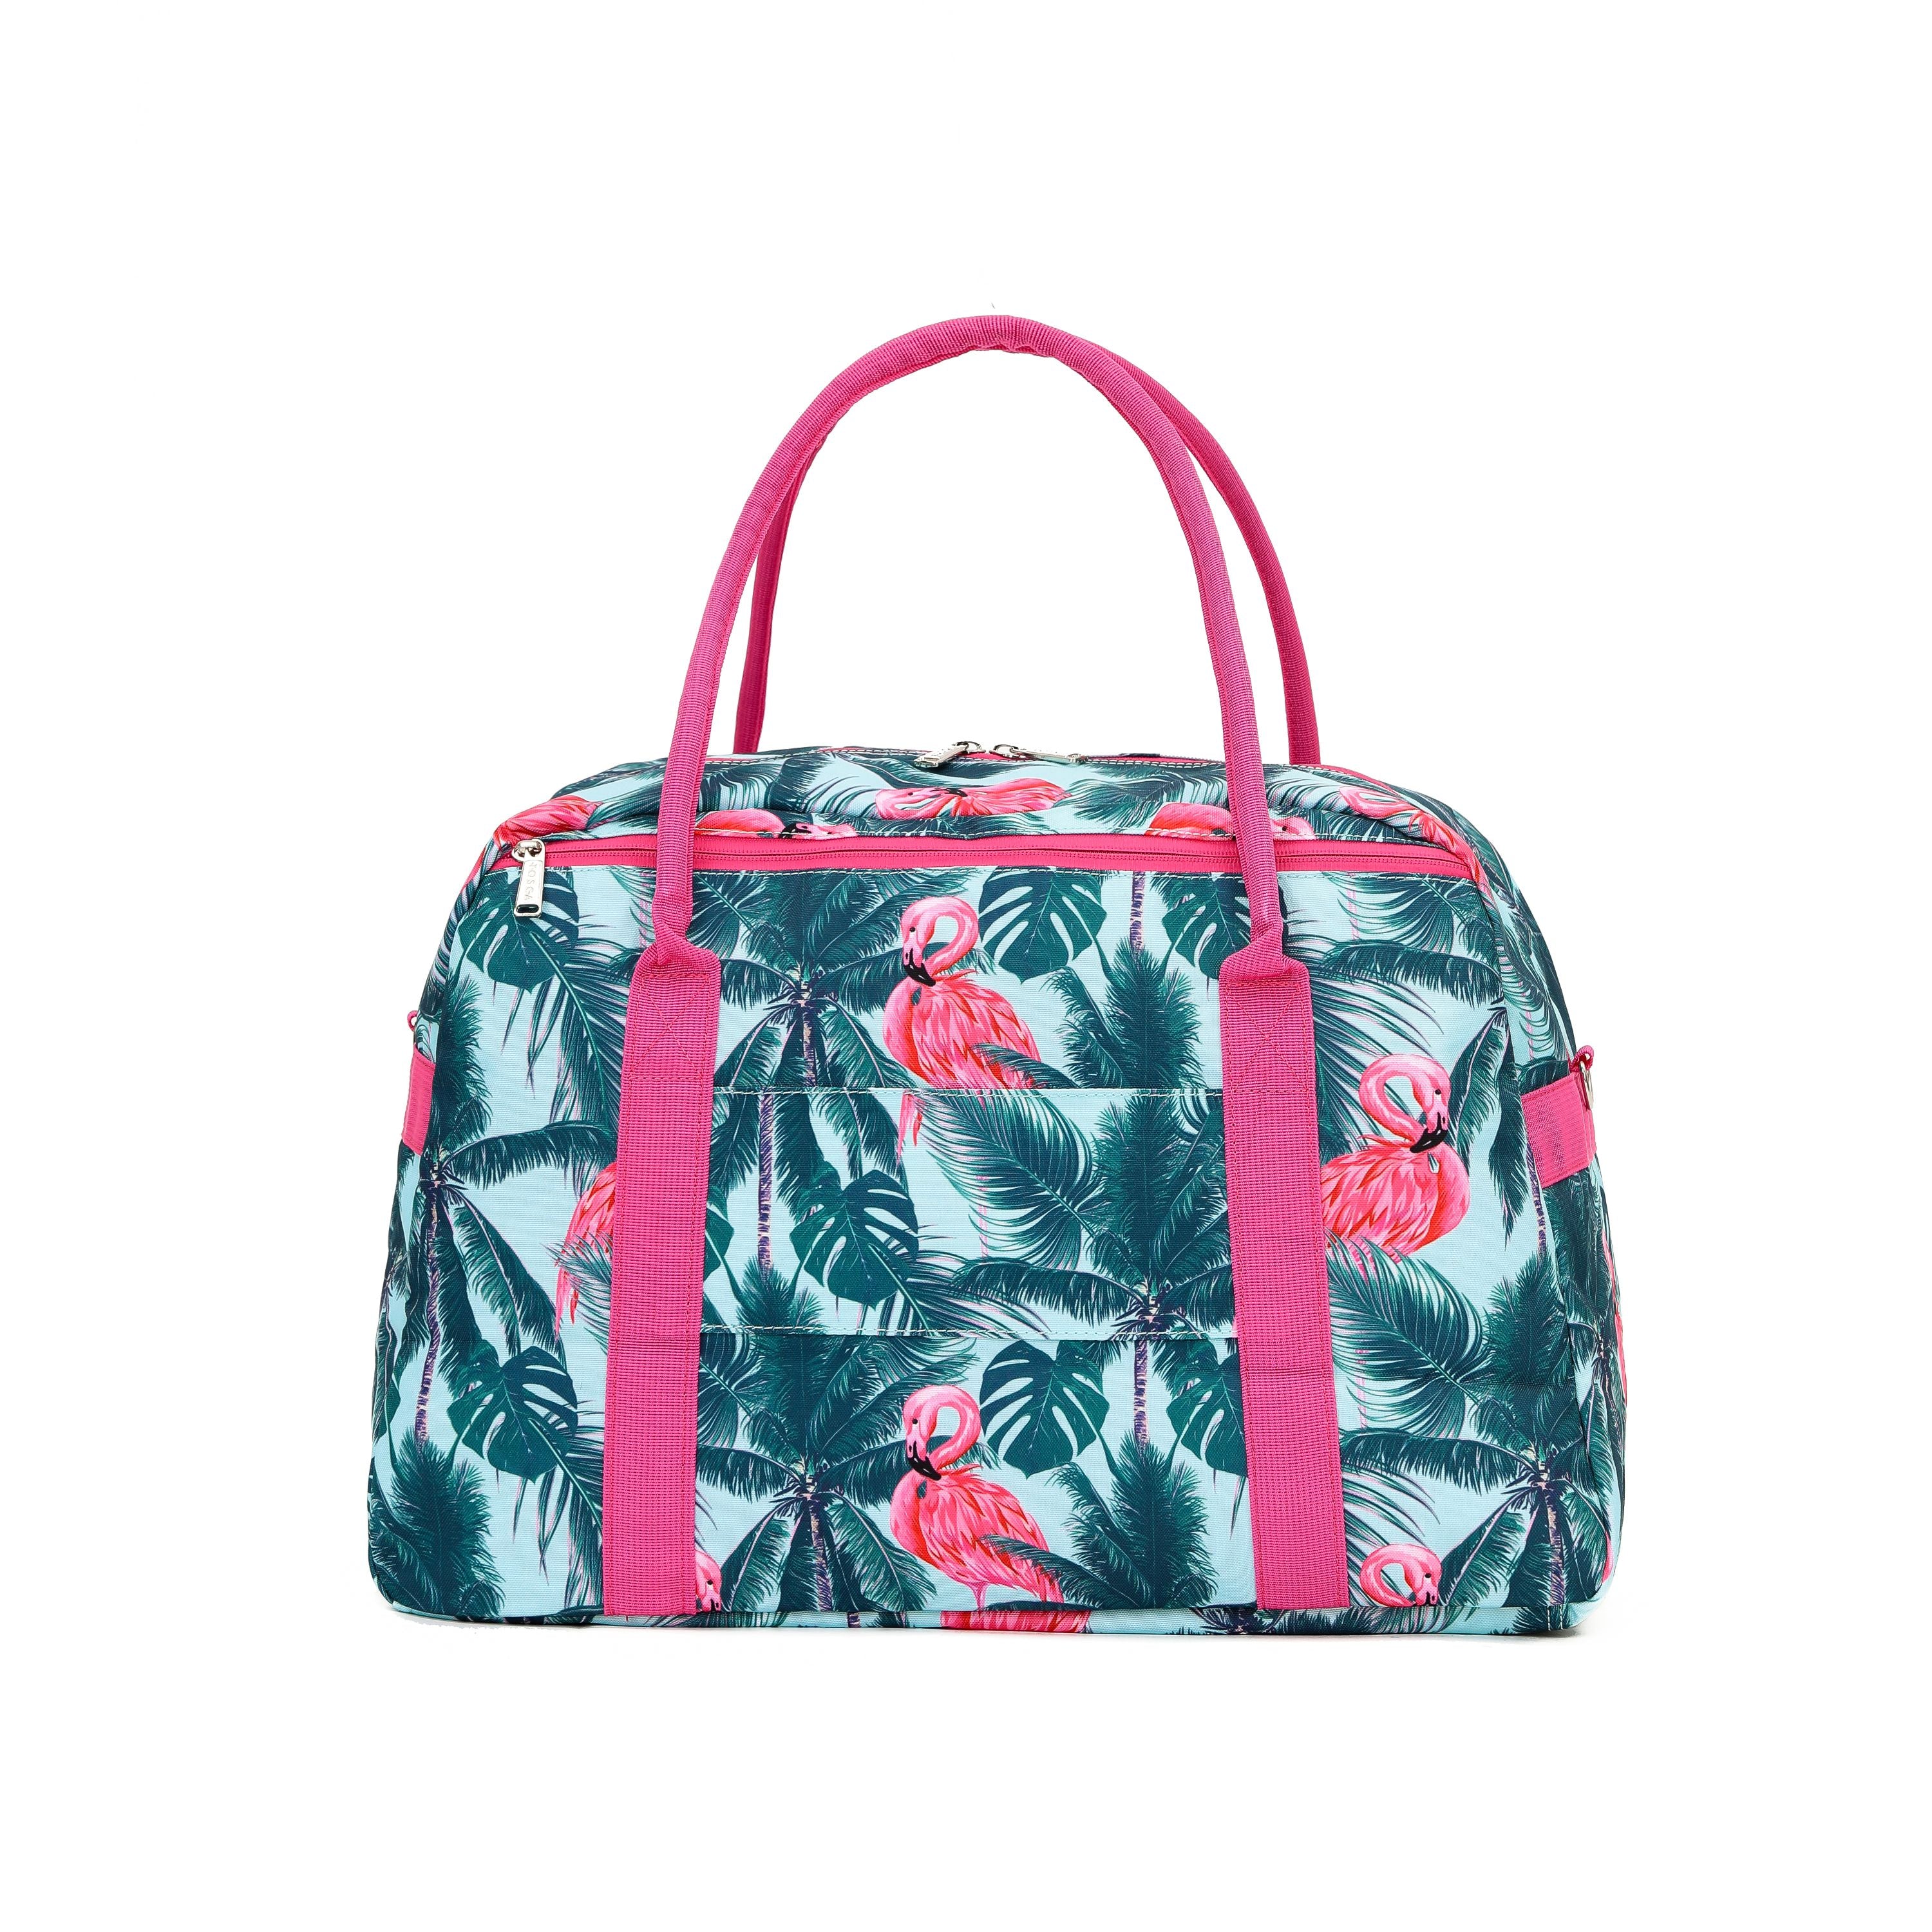 Tosca - TCA935 Fashion Tote/Duffle Bag - Flamingo - 0